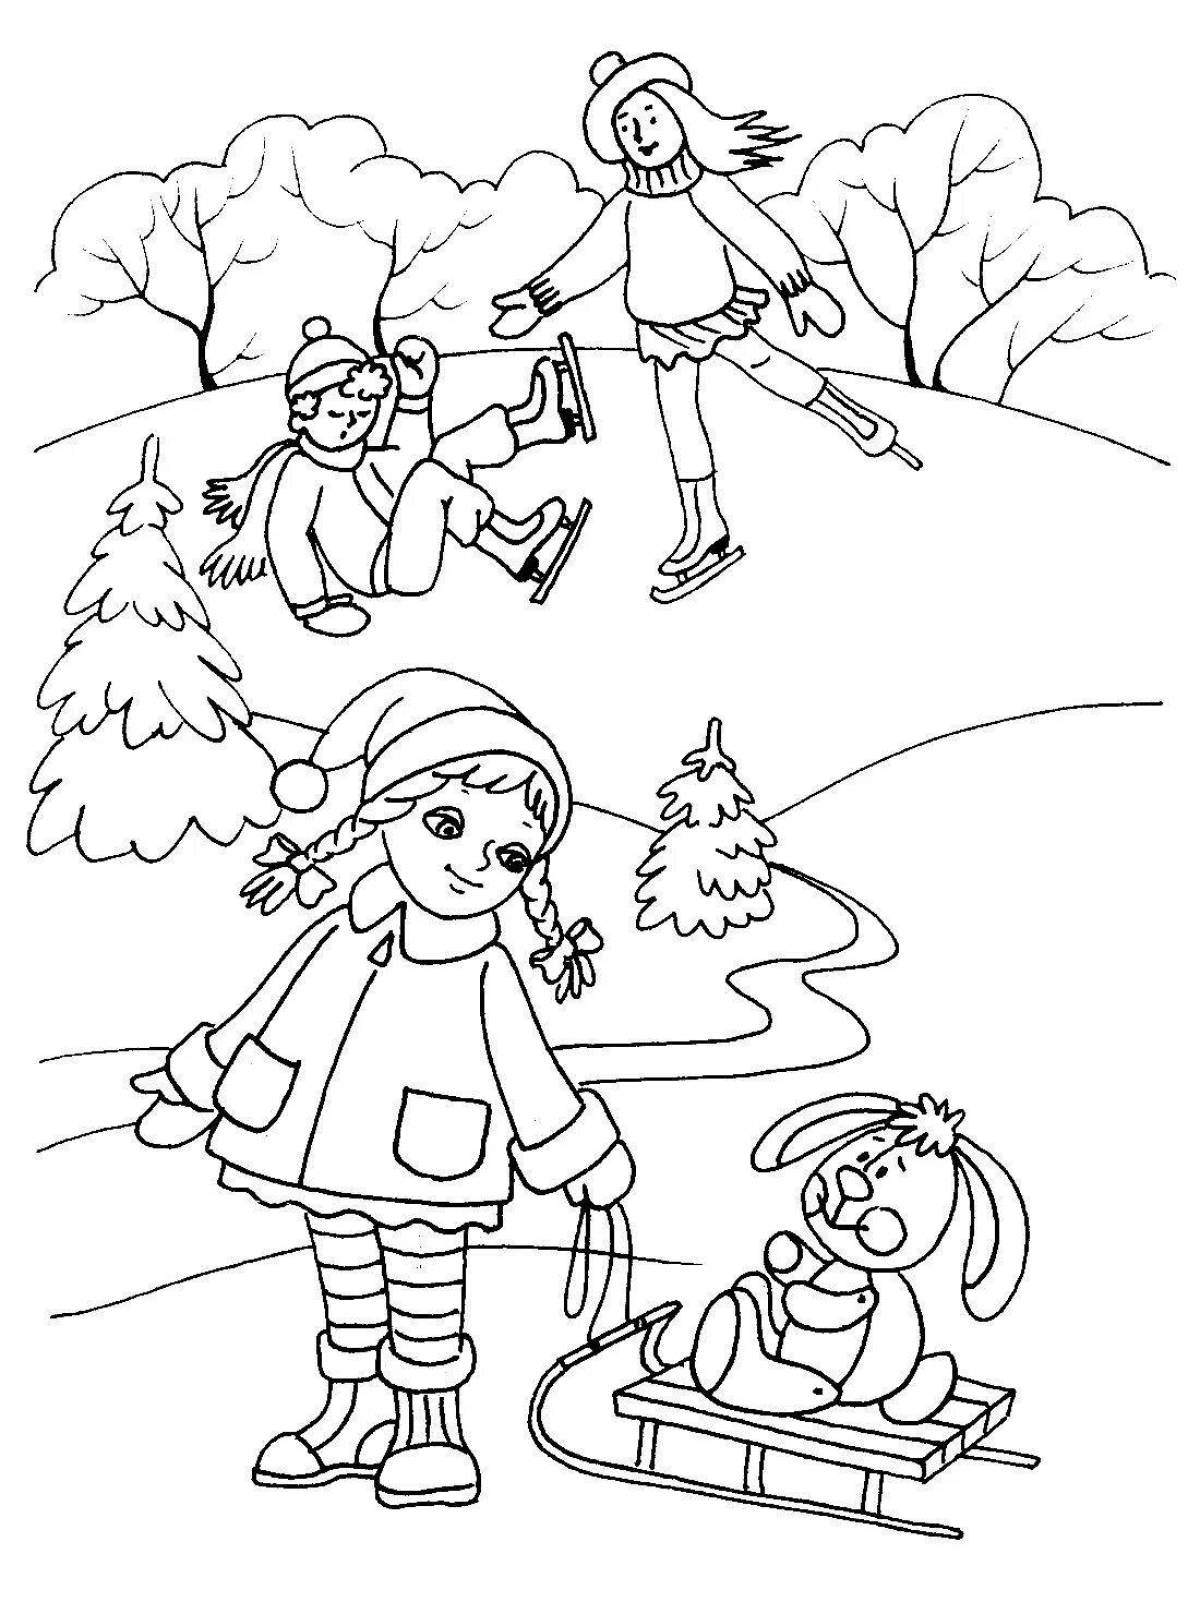 Радостная раскраска зимние забавы для детей 3-4 лет в детском саду